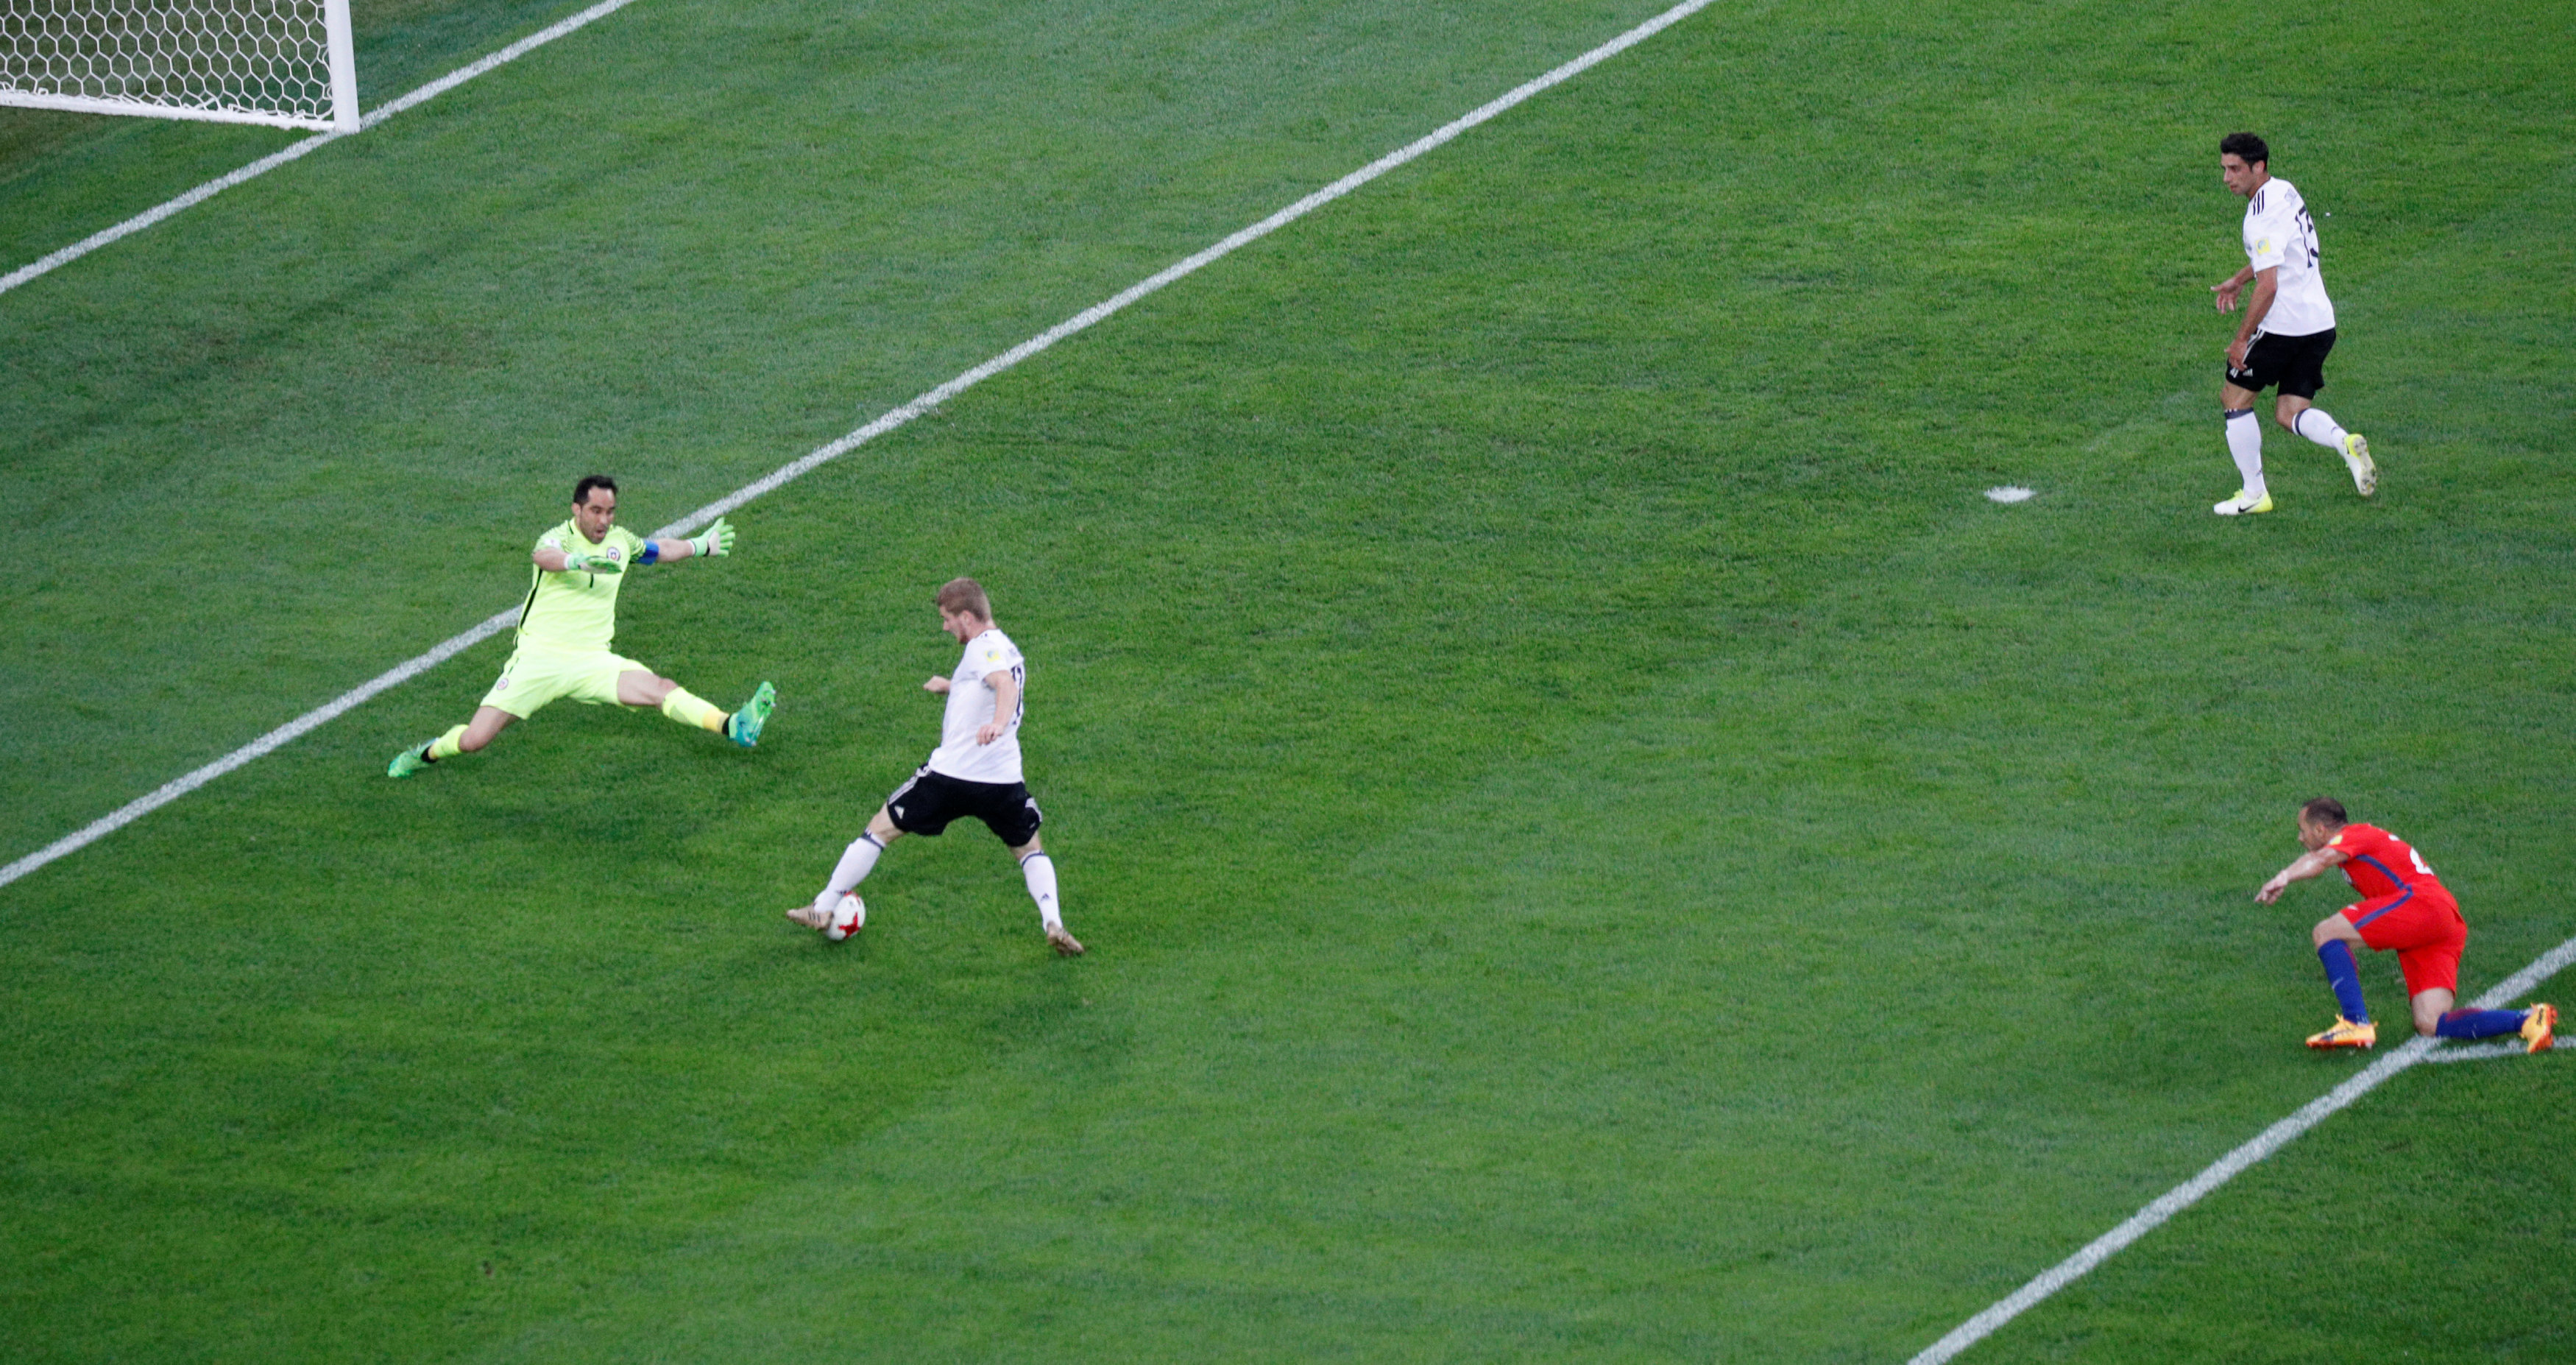 Timo Werner chuyền bóng dọn cỗ để Lars Stindl ghi bàn mở tỉ số trận đấu.